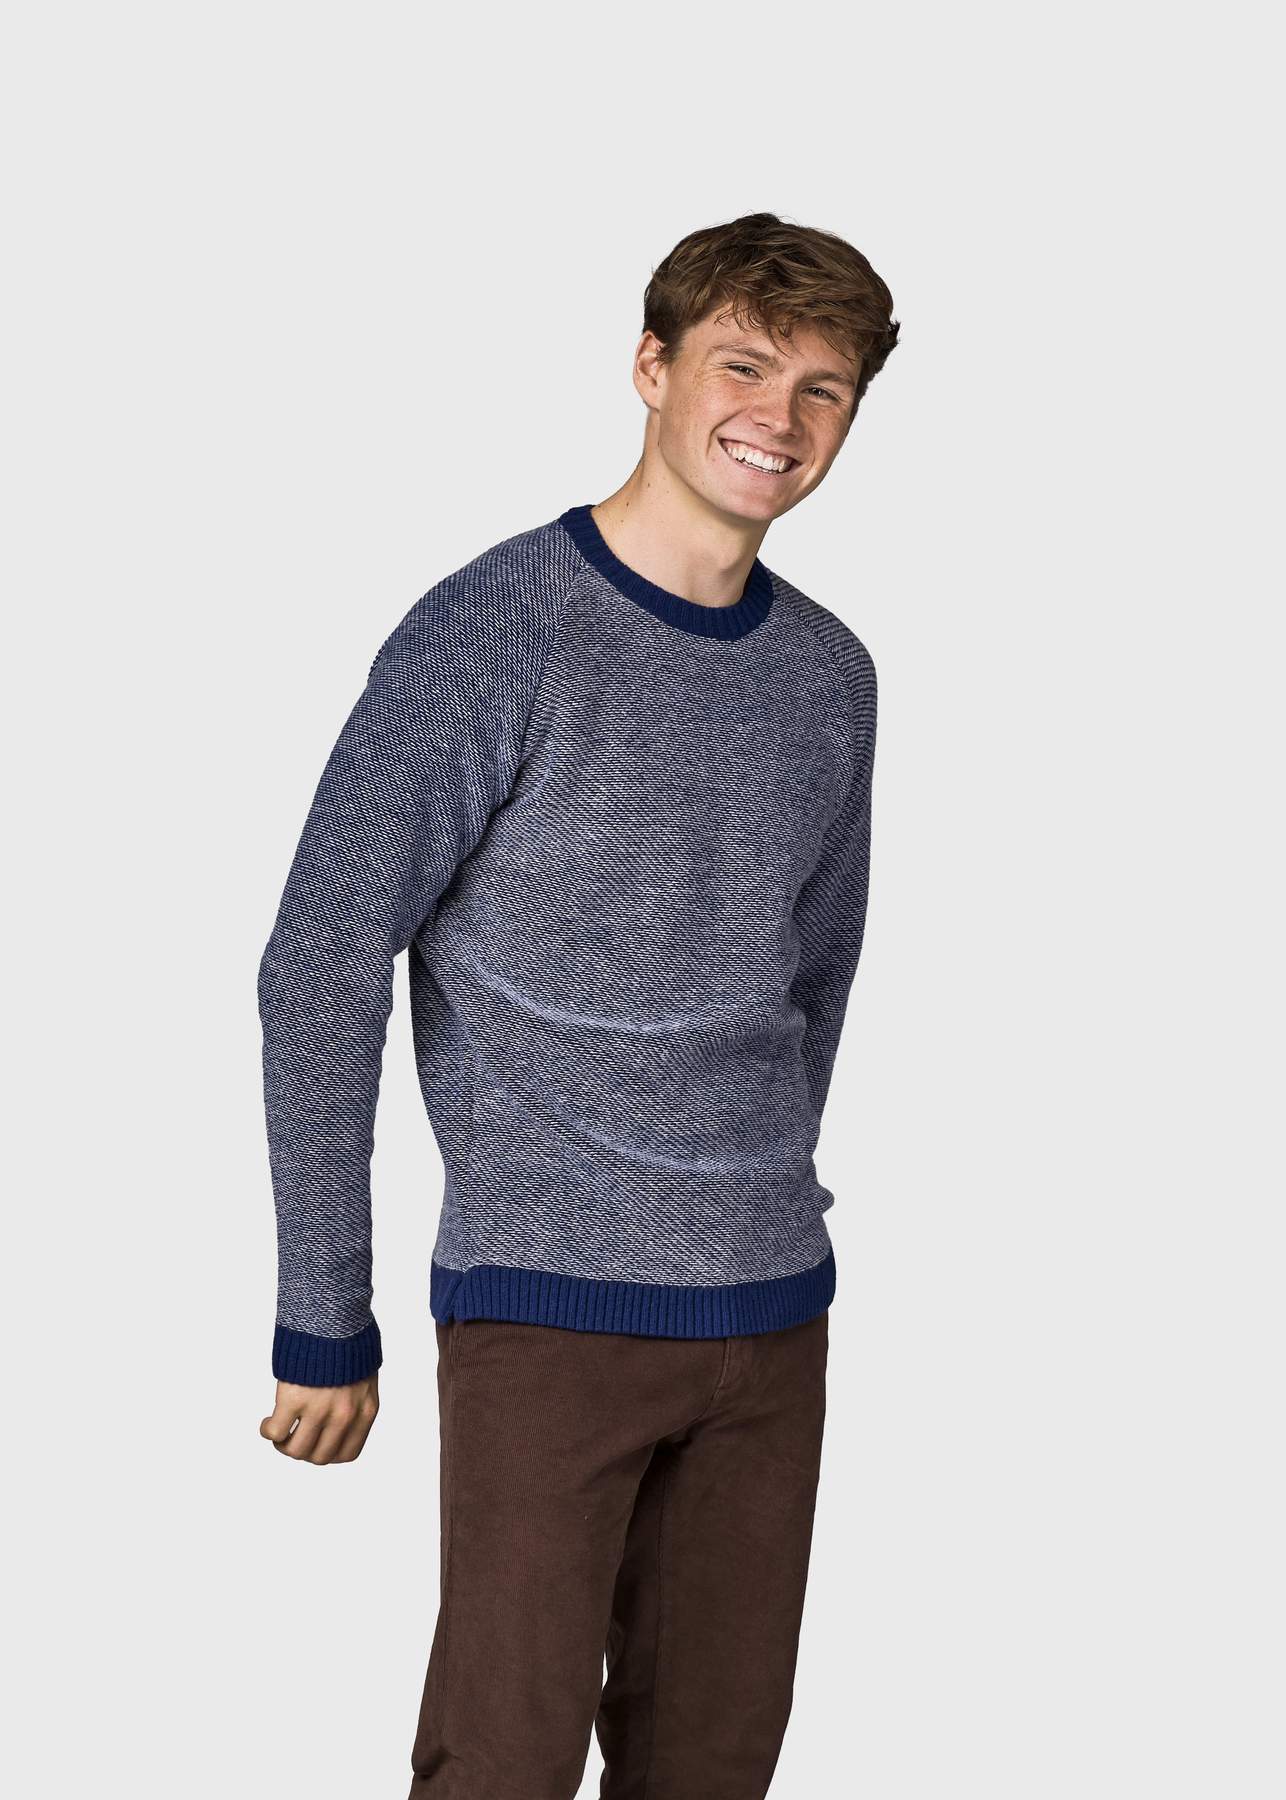 Herren-Strickpullover Arthur knit Ocean/cream (100% Wolle) 